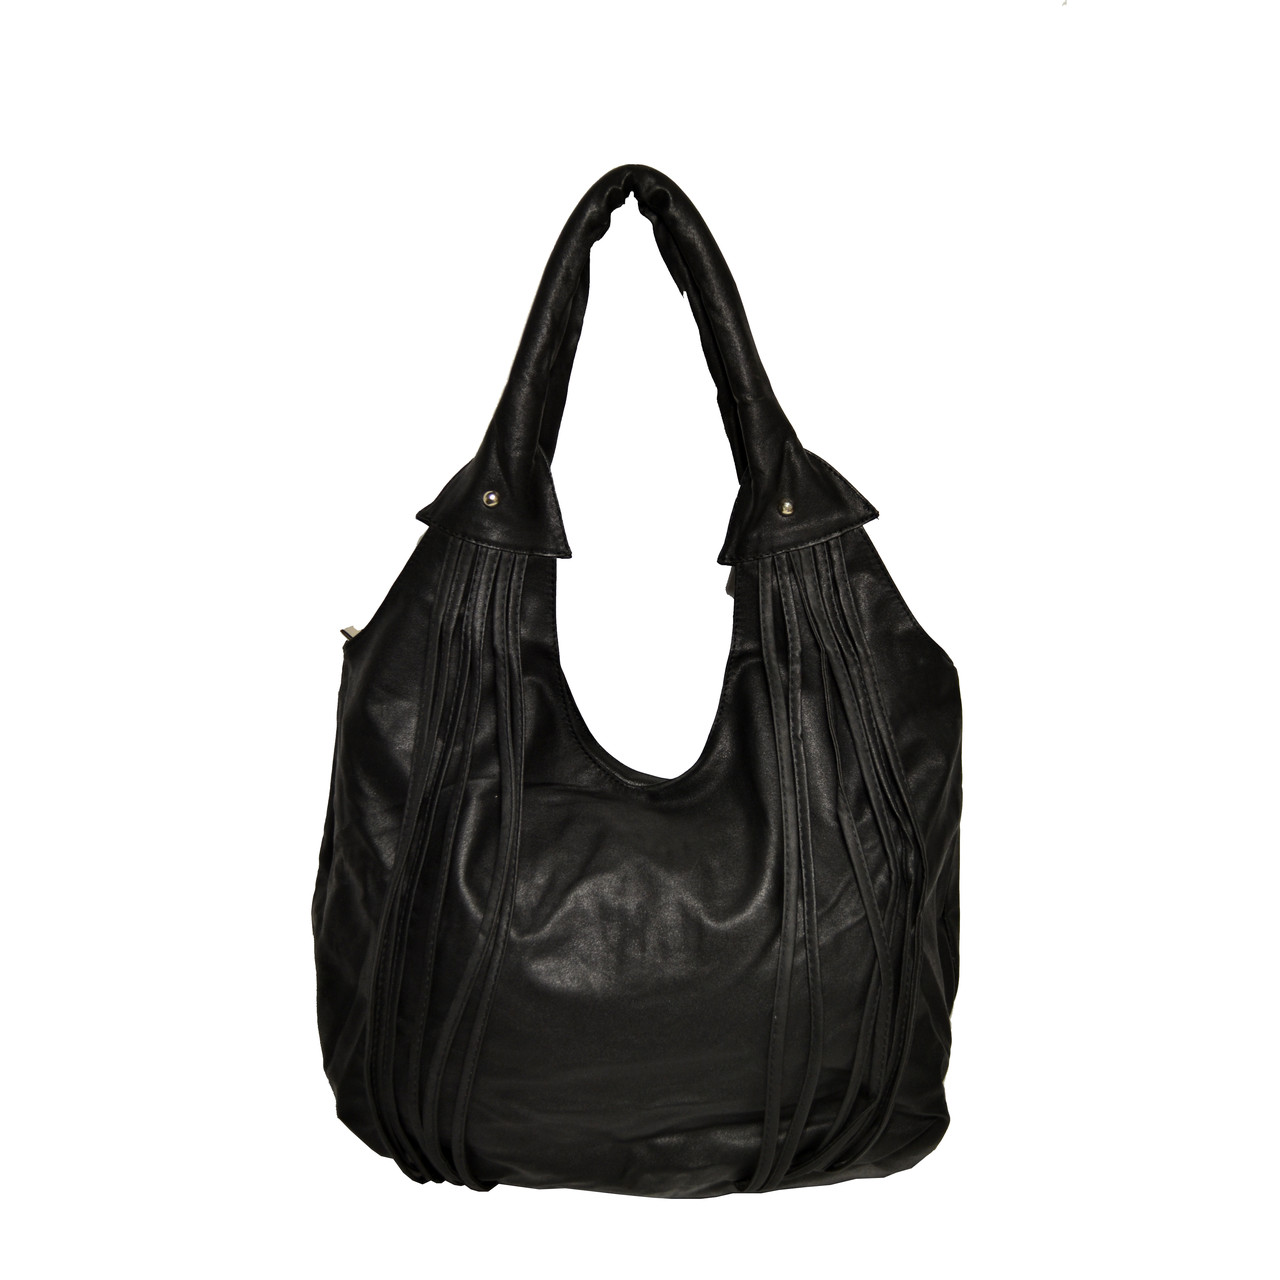 Жіноча сумка чорна